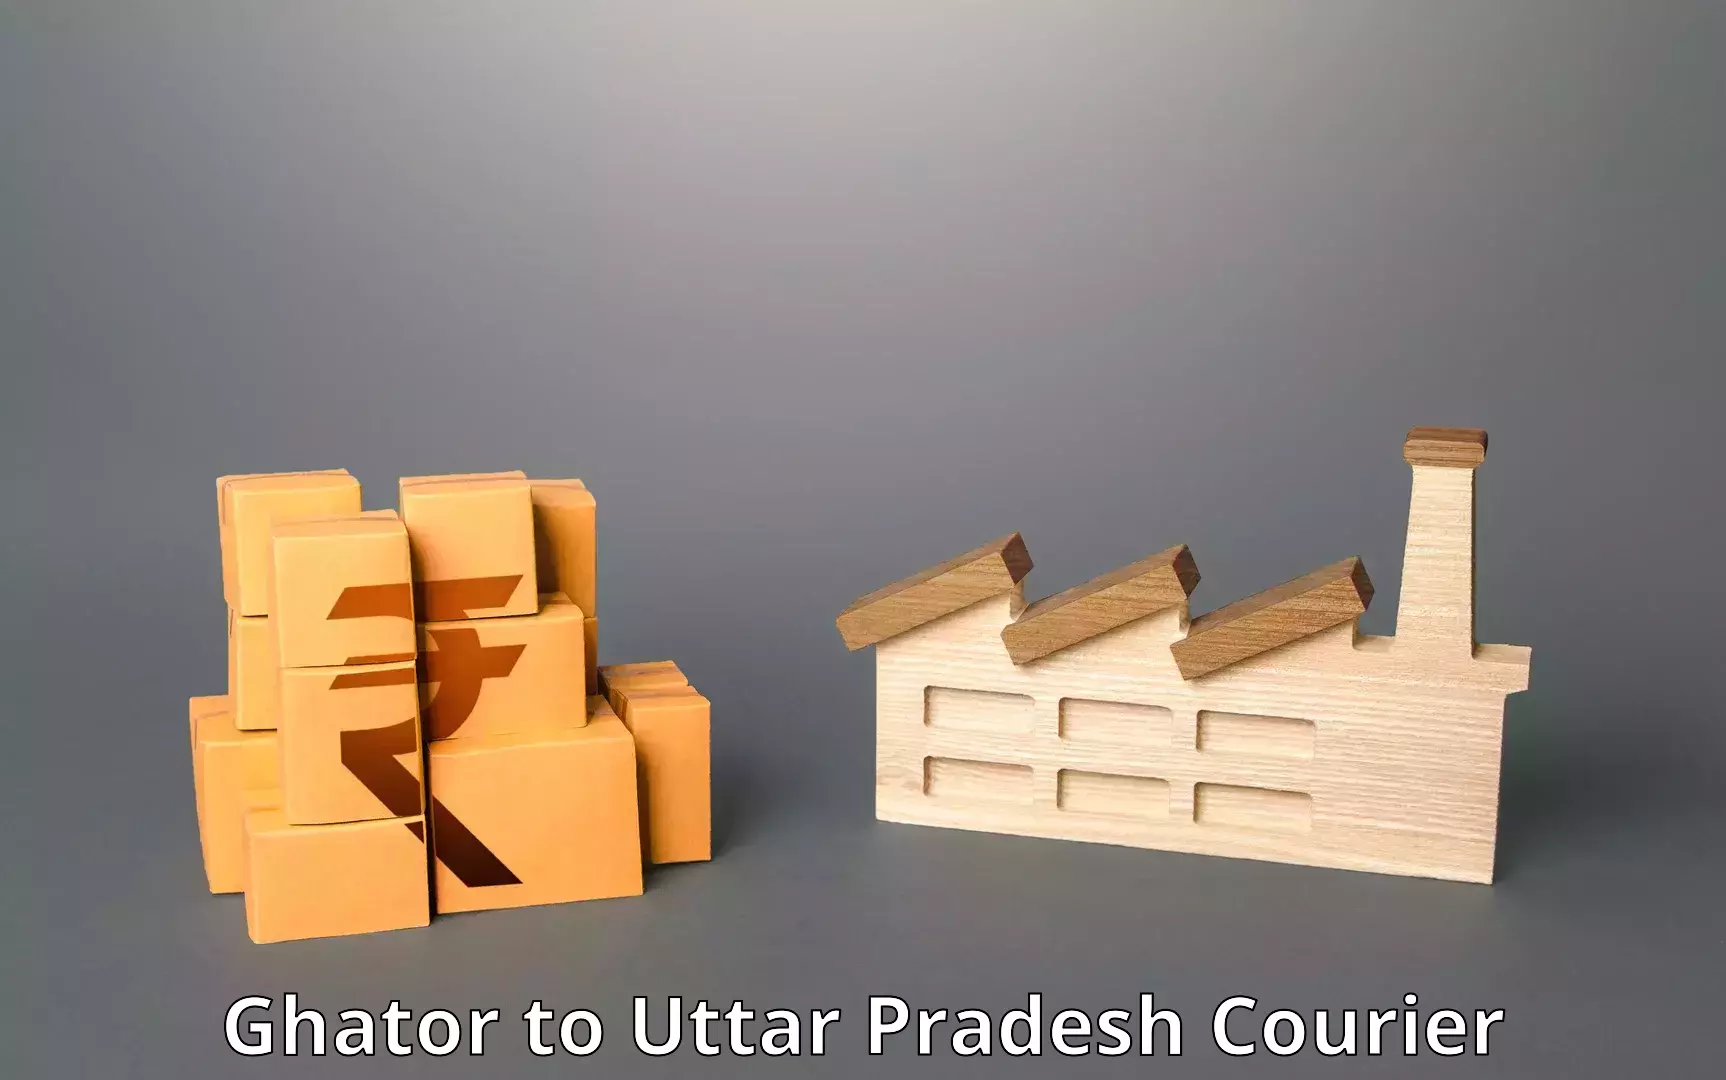 Efficient parcel transport Ghator to Uttar Pradesh